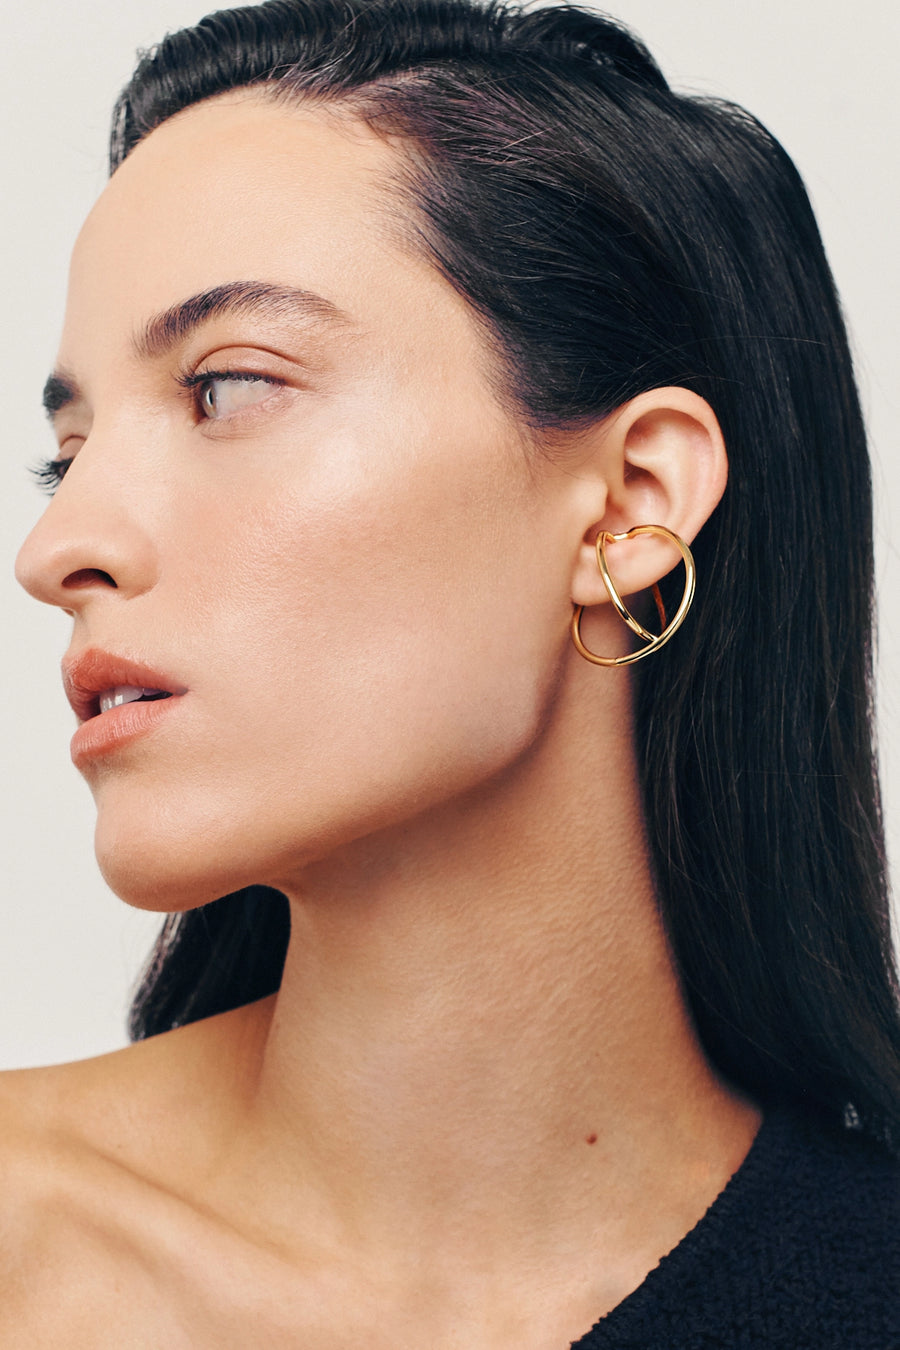 MAJOR Hoops. Bent hoops earlobe hugger earrings, no piercings, 18K gold vermeil, handmade, hypoallergenic, water-resistant